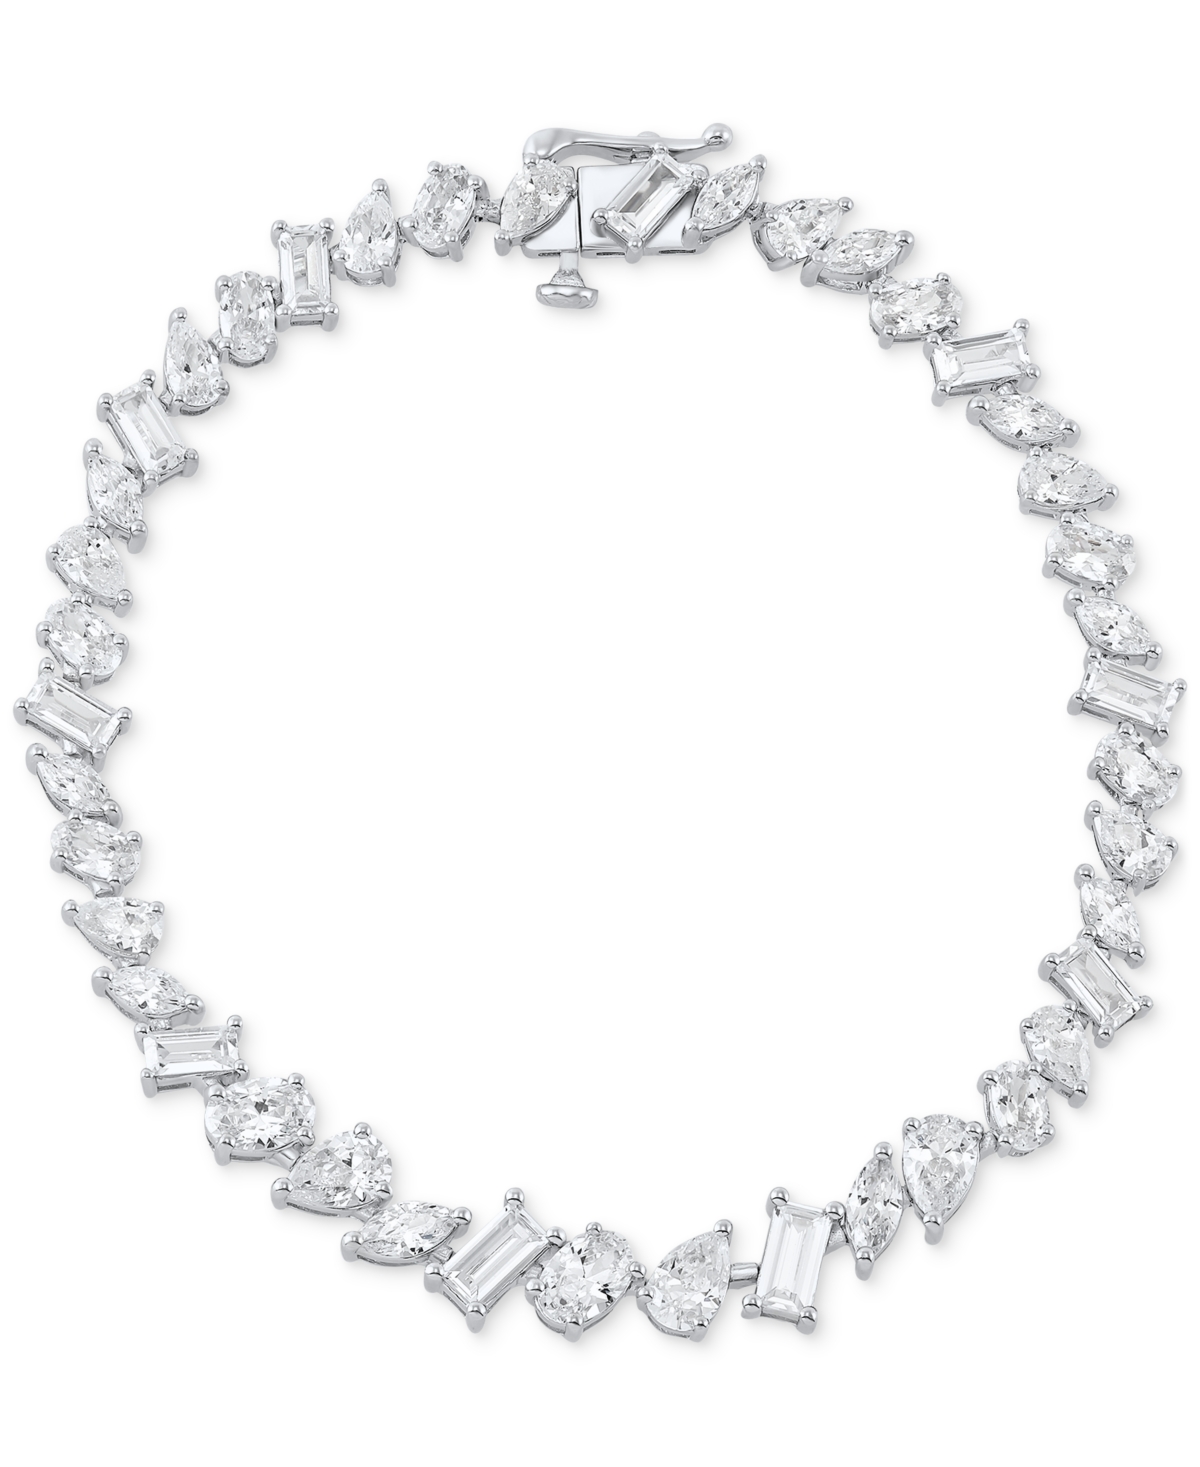 Cubic Zirconia Multi-Cut Tennis Bracelet in Sterling Silver - Sterling Silver